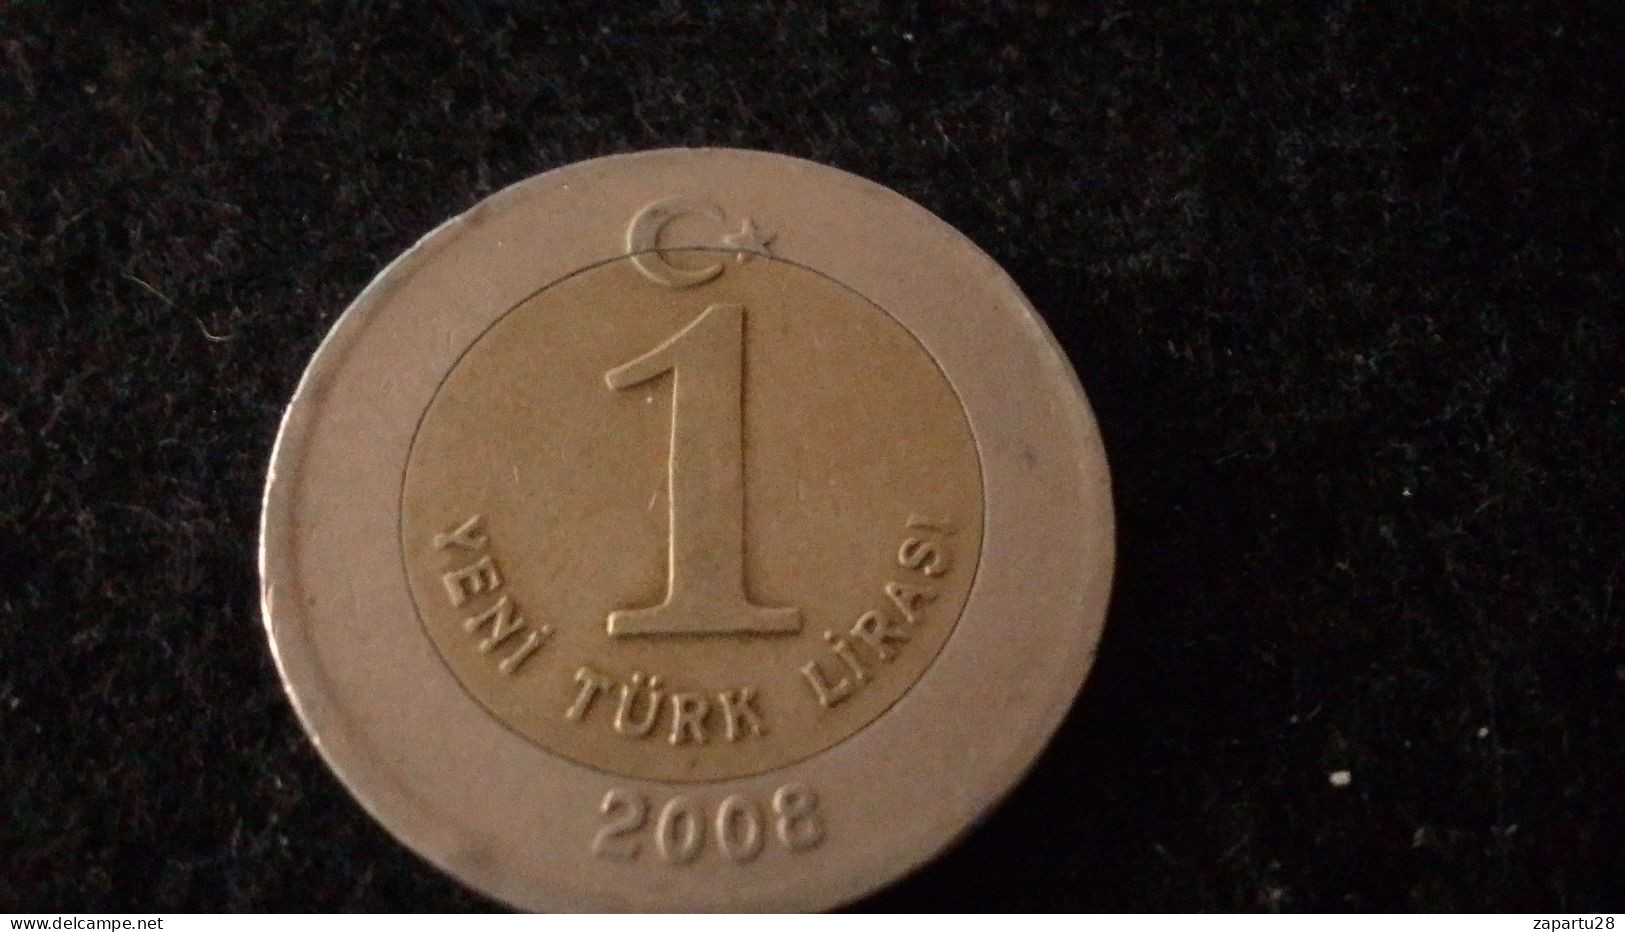 TÜRKİYE - 2008 - 1 YENİ TÜEK LİRASI - Turchia